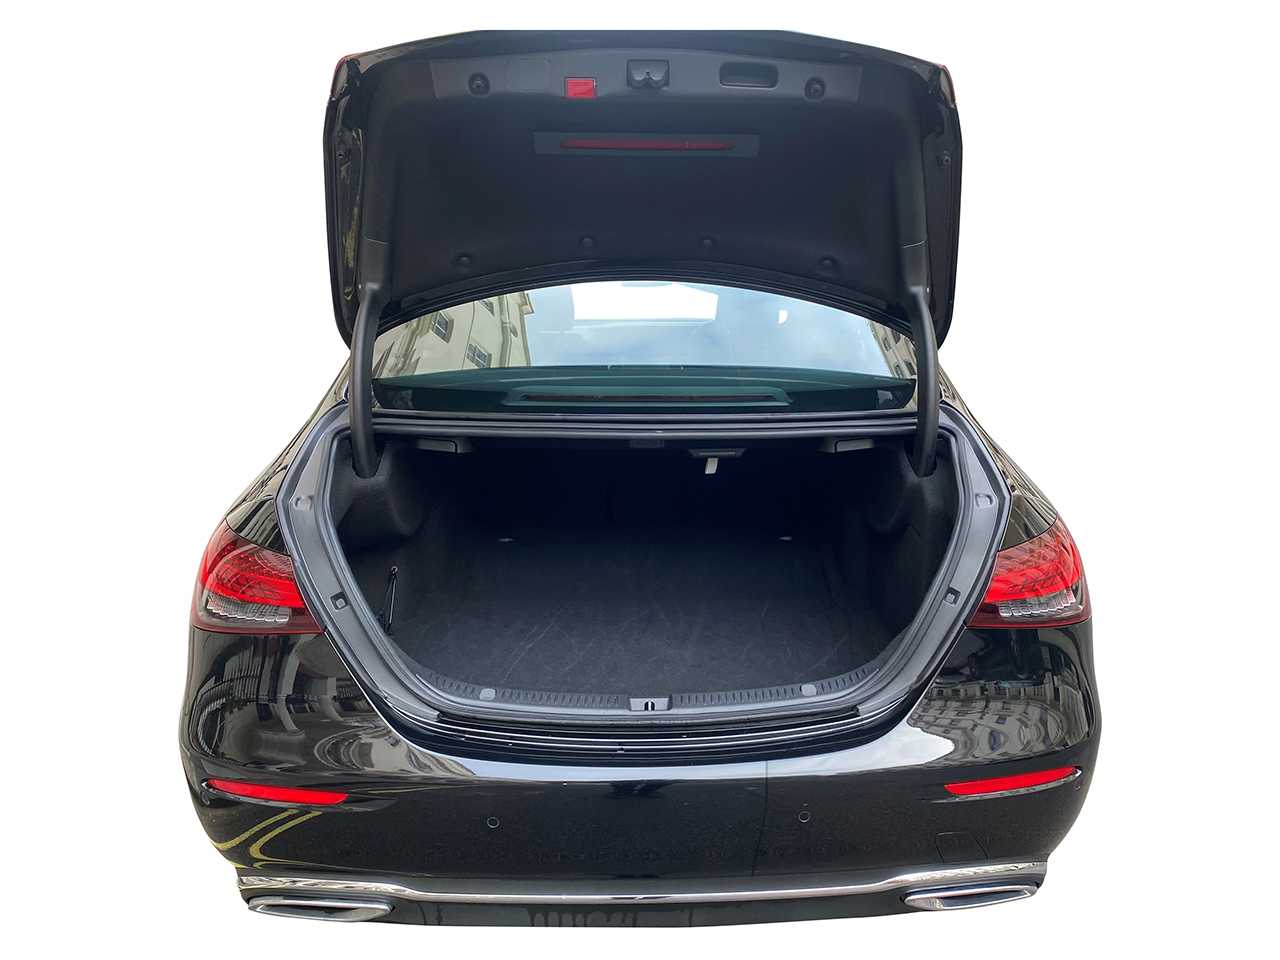 Mercedes Benz E-Class trunk